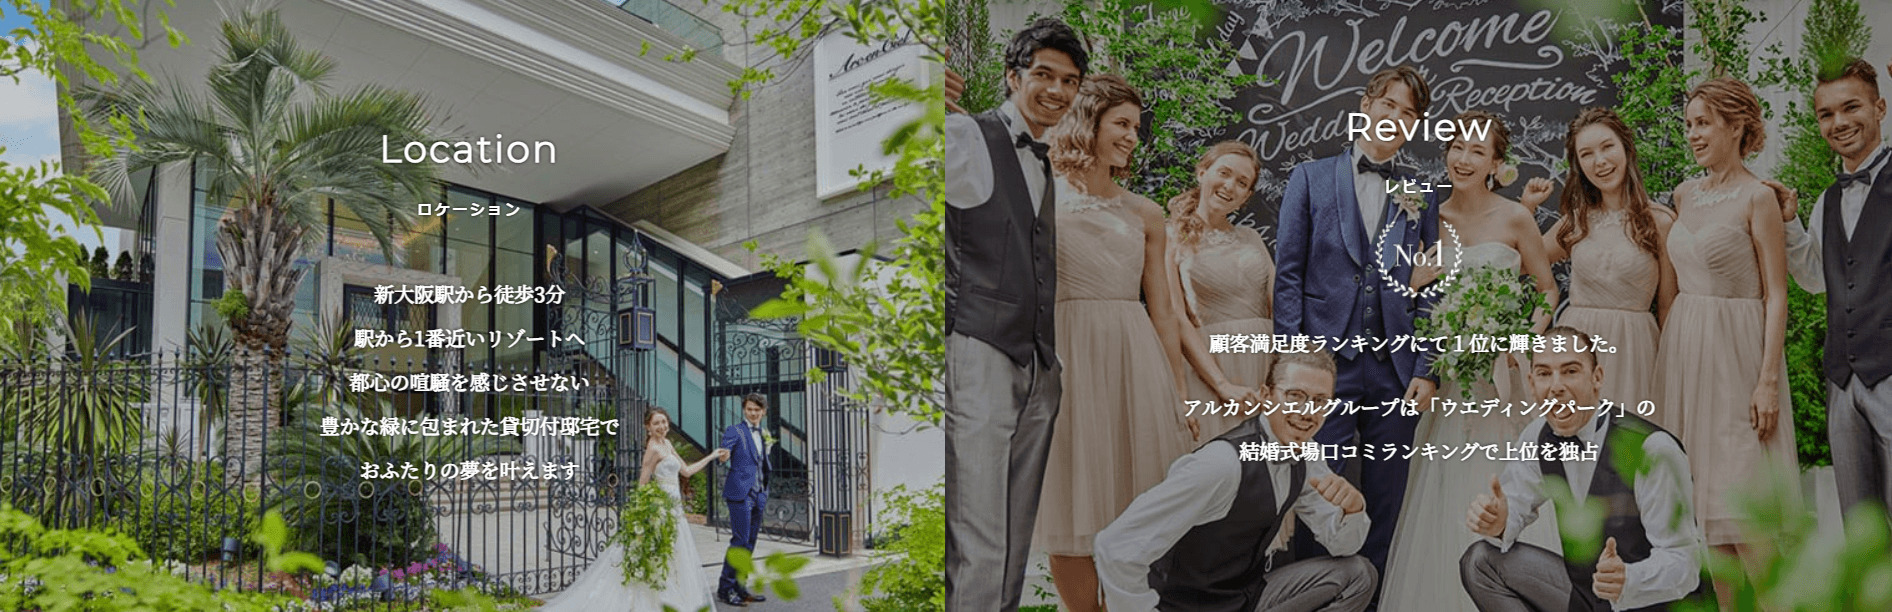 アルカンシエル luxe mariage 大阪の画像5